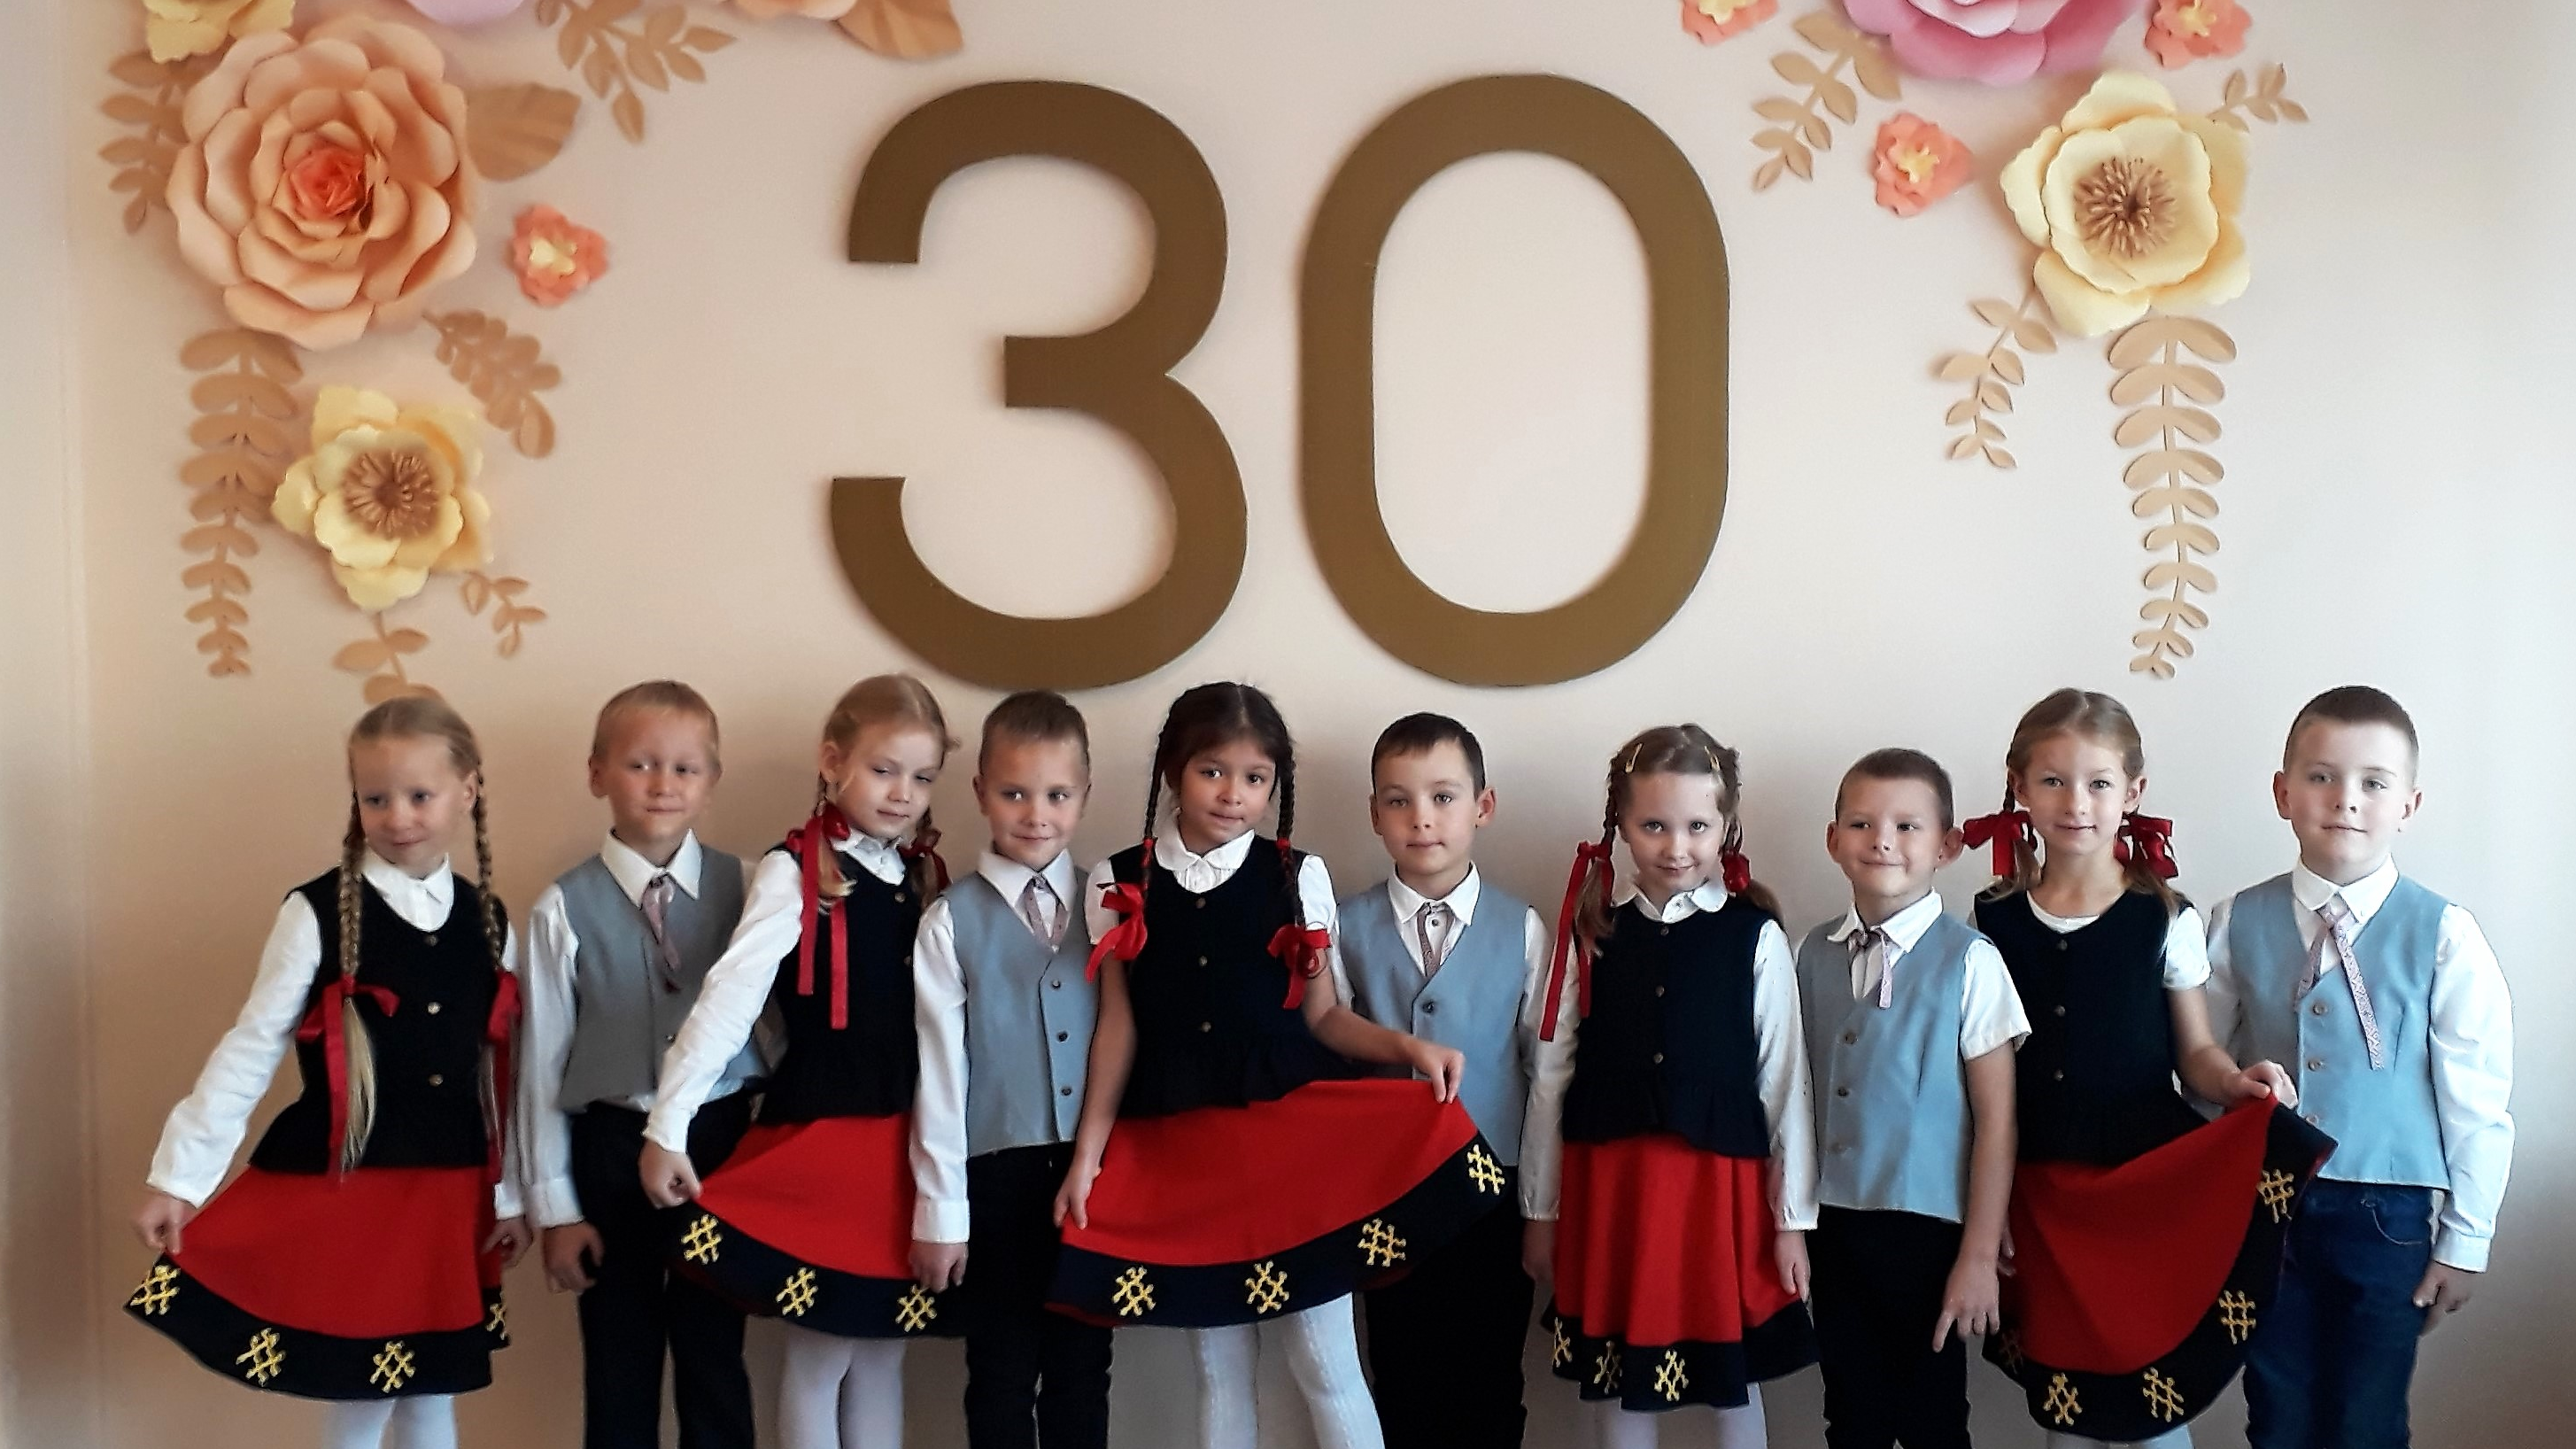 Rīgas 273. pirmsskolas izglītības iestādei - 30